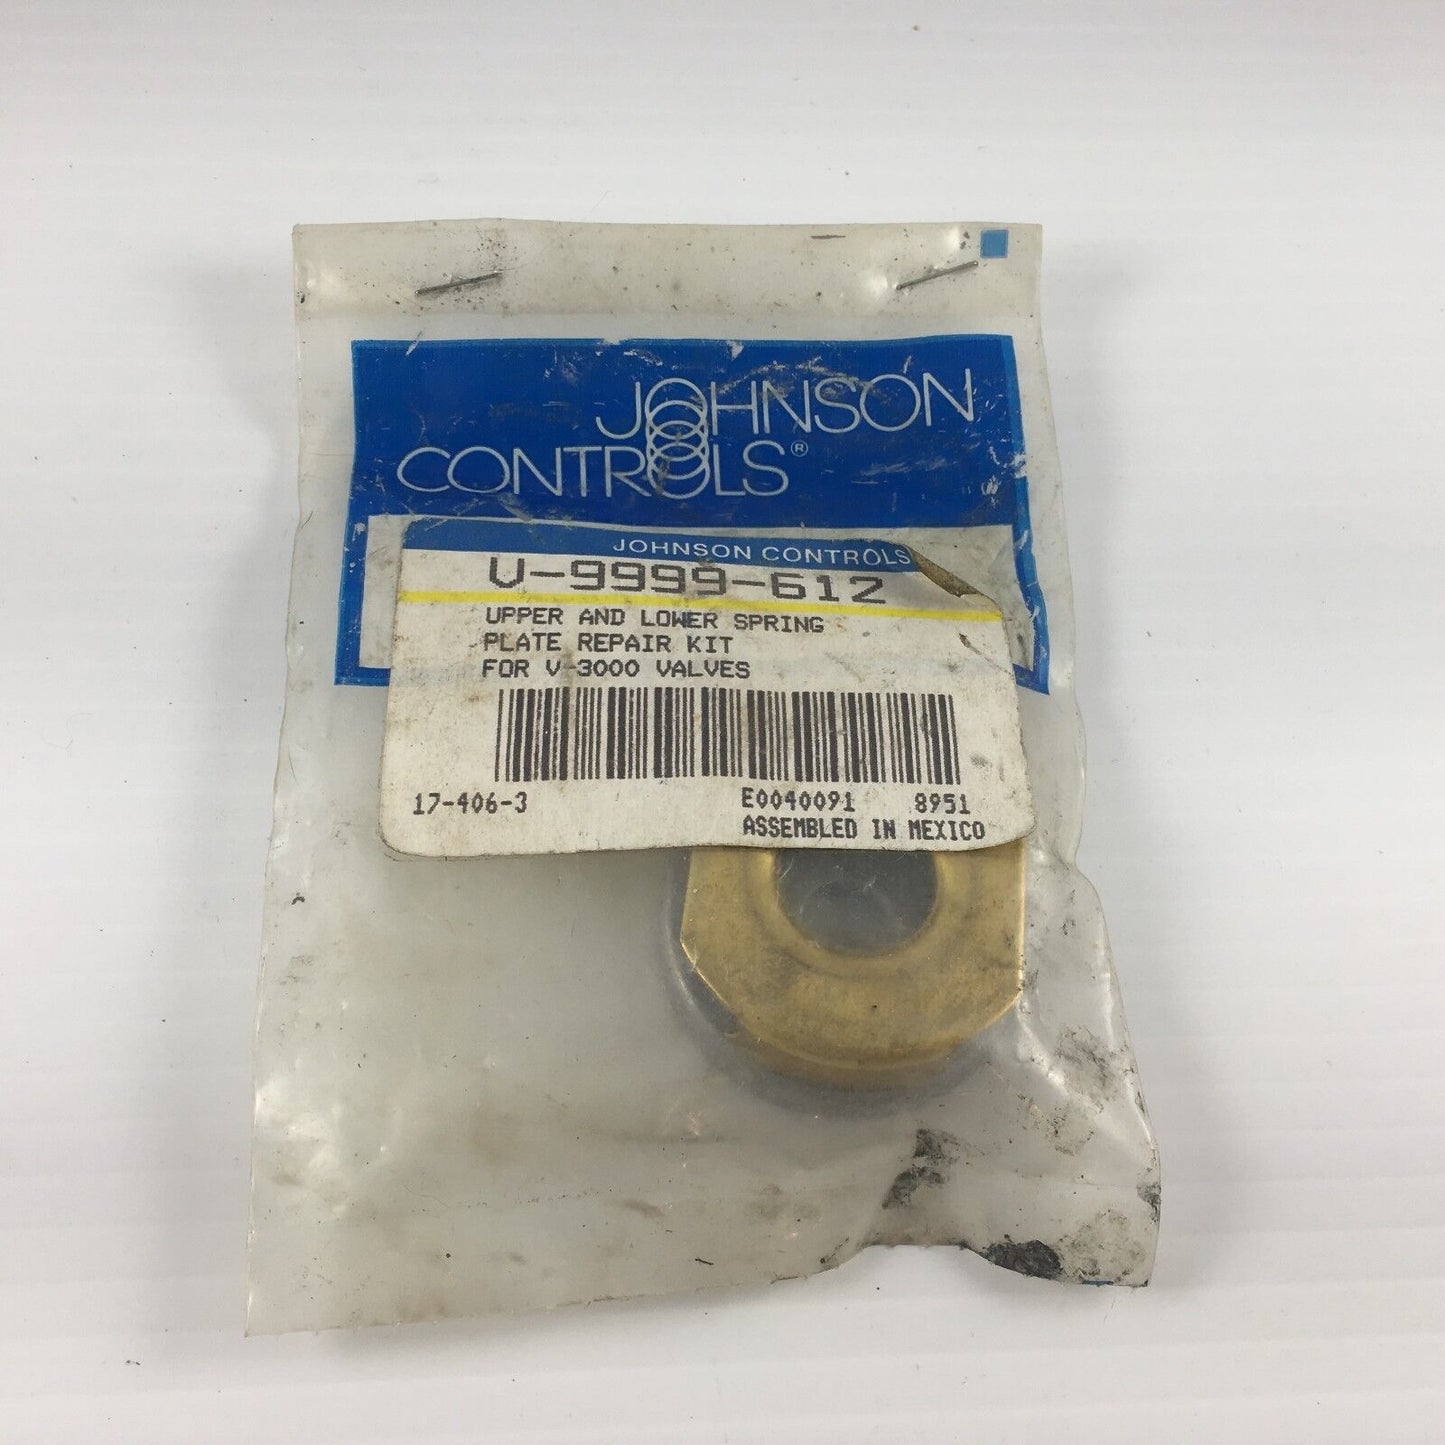 JOHNSON CONTROLS V-9999-612 Spring plate Repair Kit, For V-3000 Valves